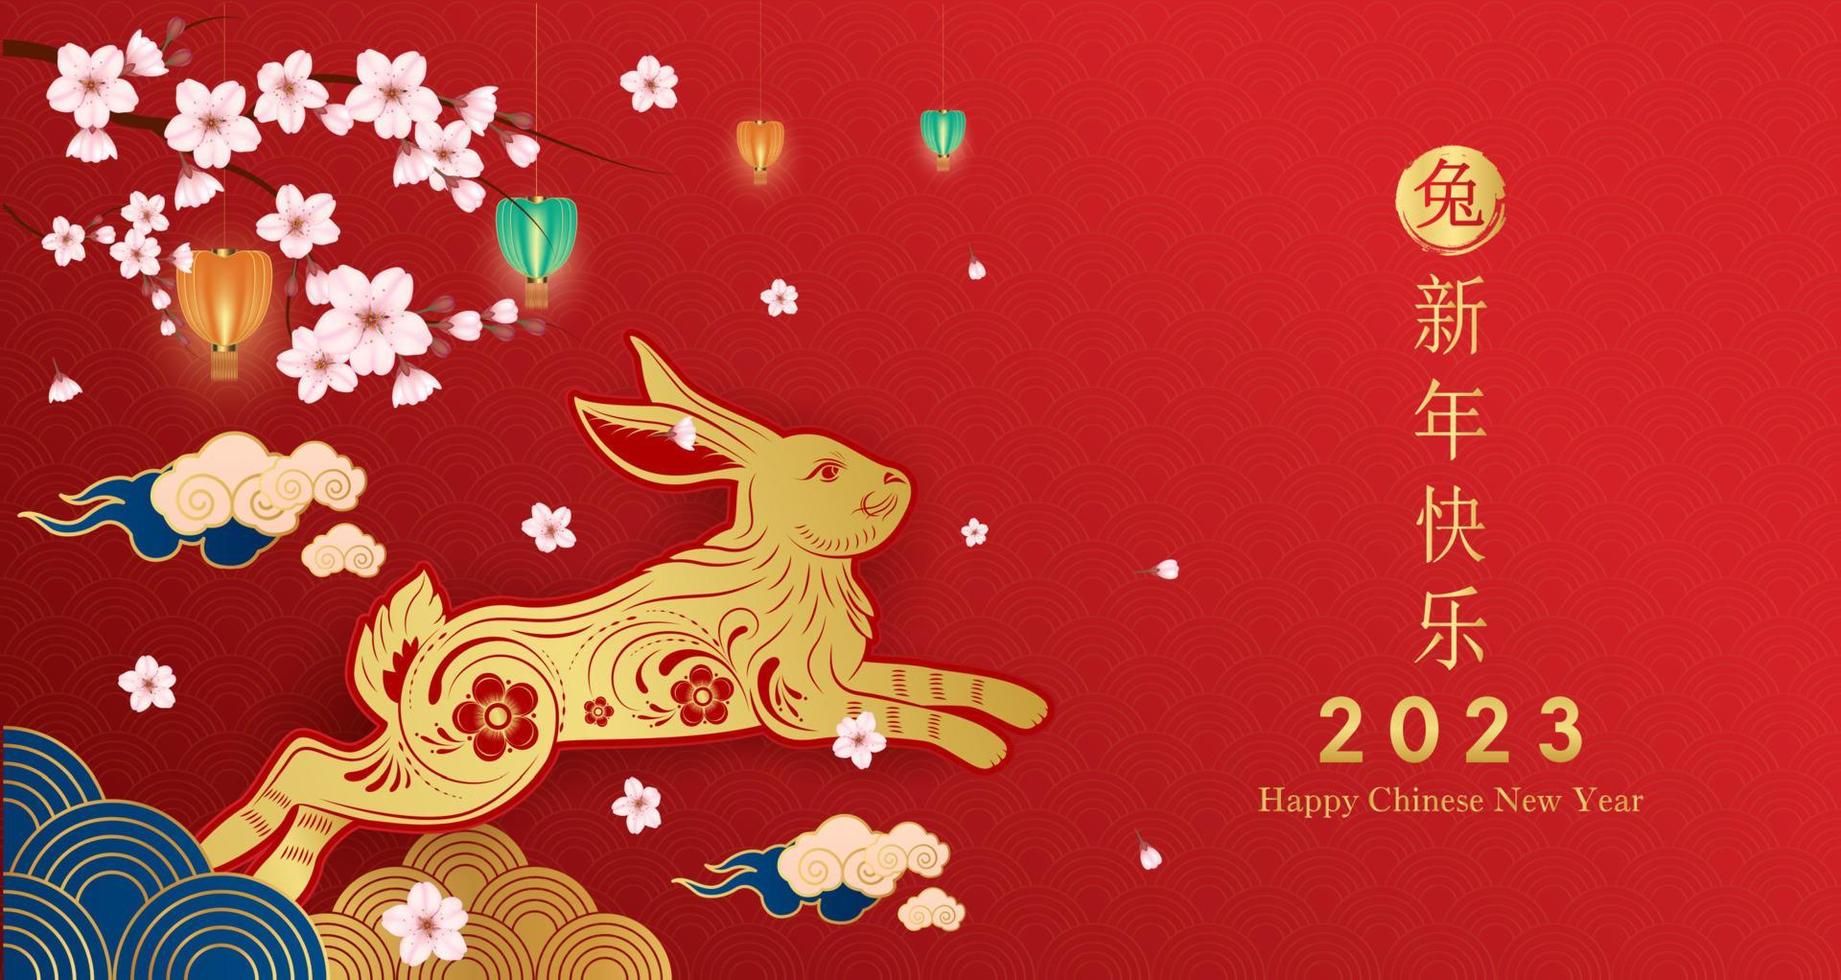 kaart gelukkig chinees nieuwjaar 2023, konijn sterrenbeeld op rode achtergrond. elementen met ambachtelijk konijn en sakura-bloem. chinese vertaling gelukkig nieuwjaar 2023, jaar van het konijn. vectoreps10. vector